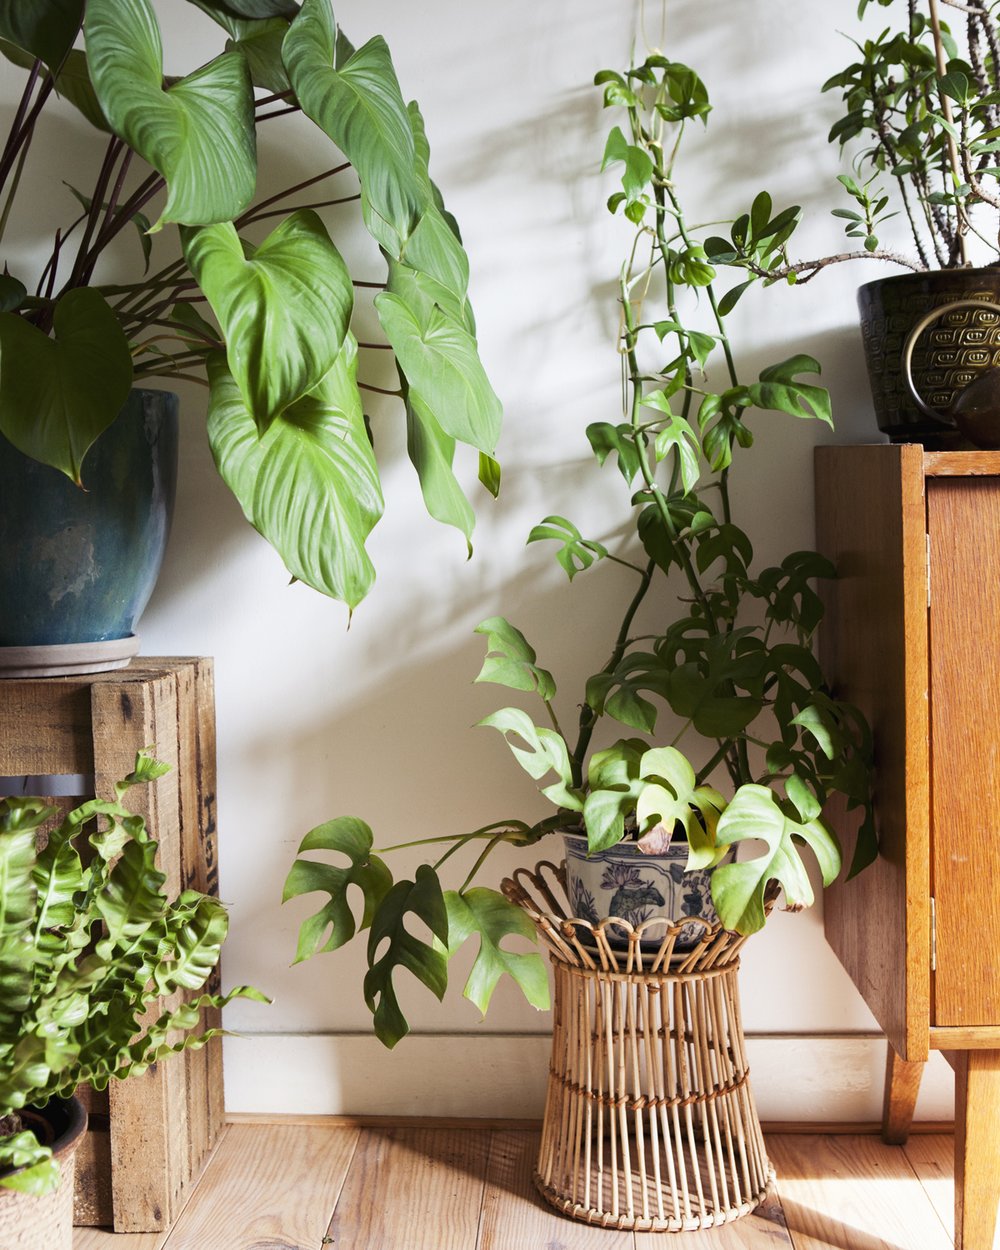 Verleiding Terug kijken opvoeder Hoeveel licht heeft een plant nodig? — Mama Botanica